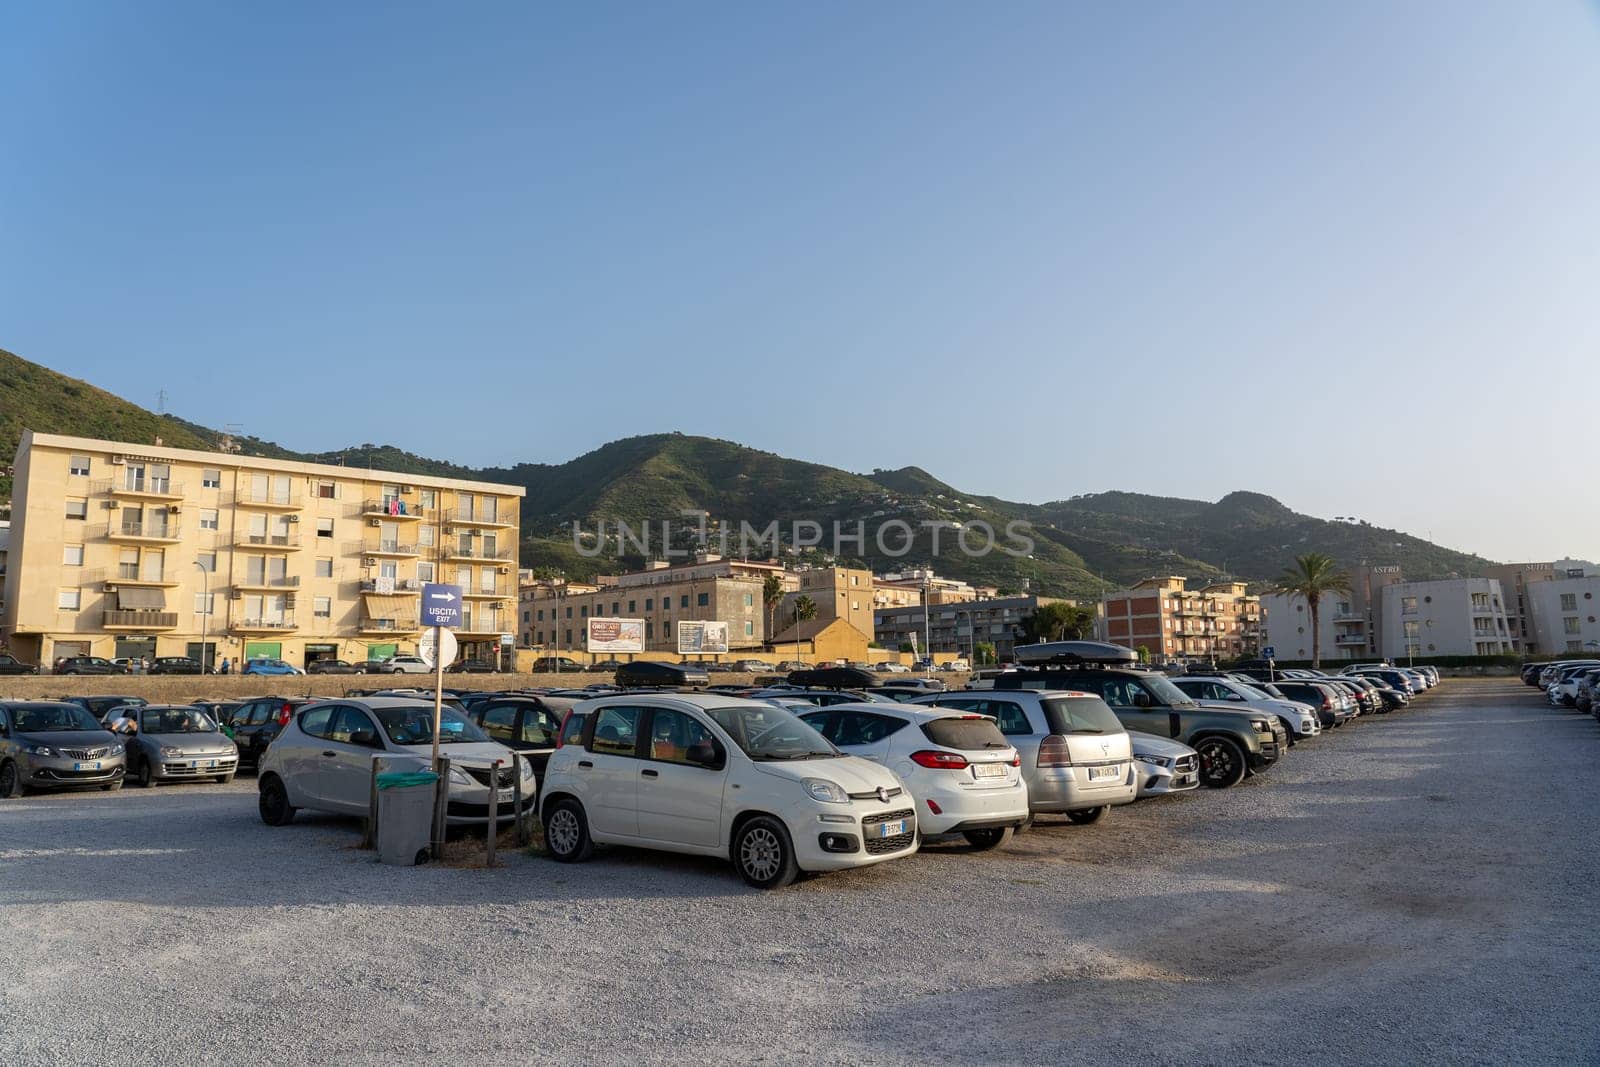 Parking lot in Cefalu, Sicily by oliverfoerstner